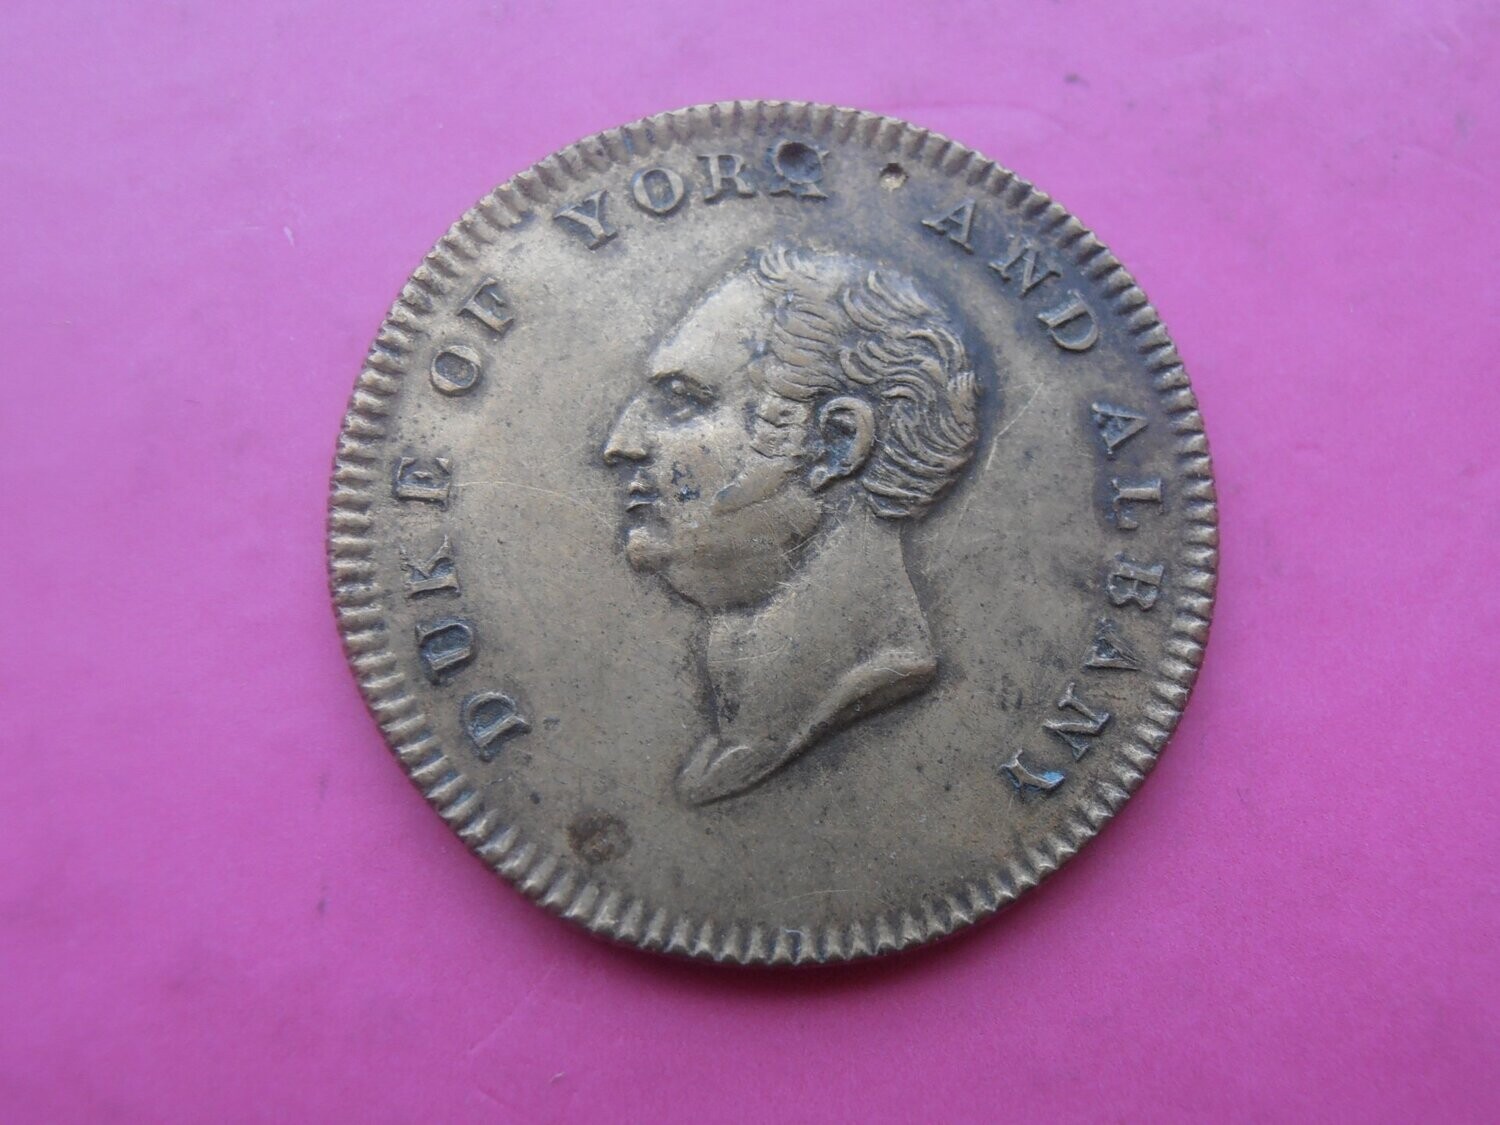 Duke of York Death Medal - 1827